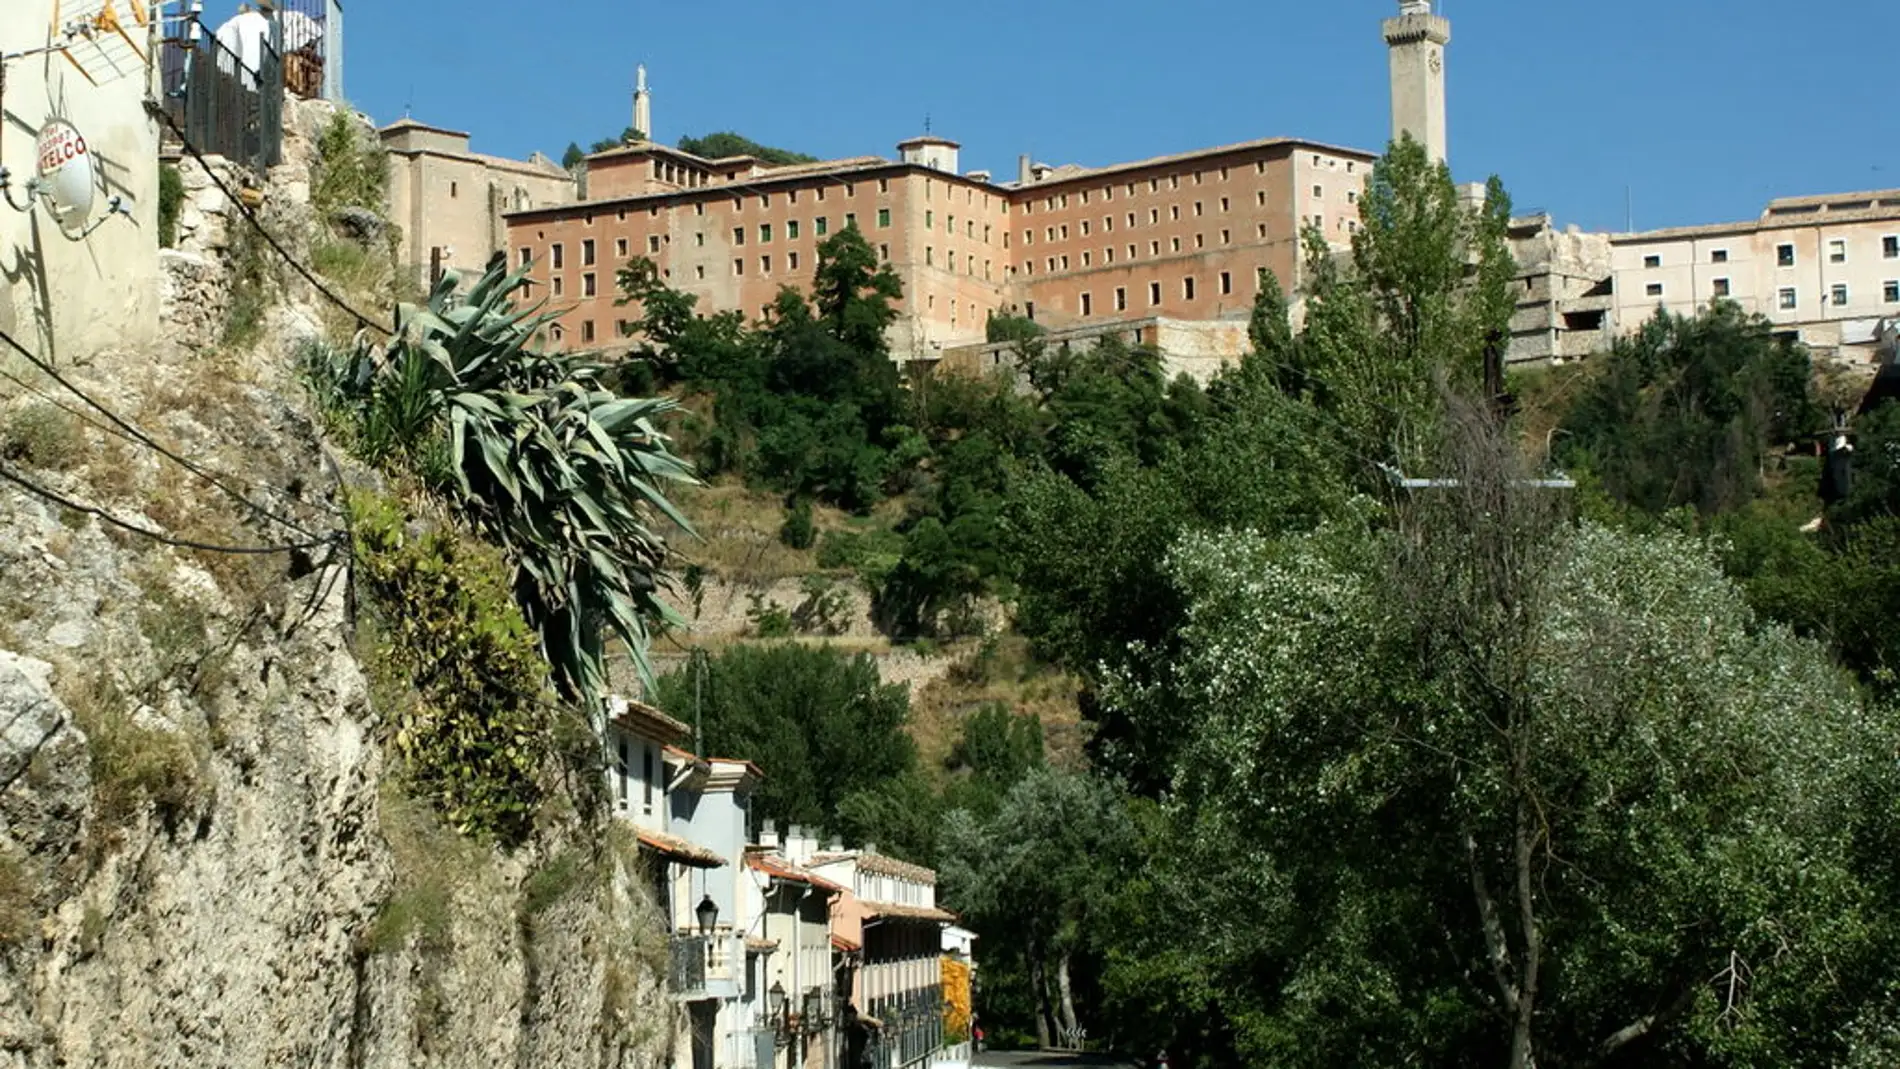 Torre de Mangana de Cuenca: por qué se erigió y qué historia esconde